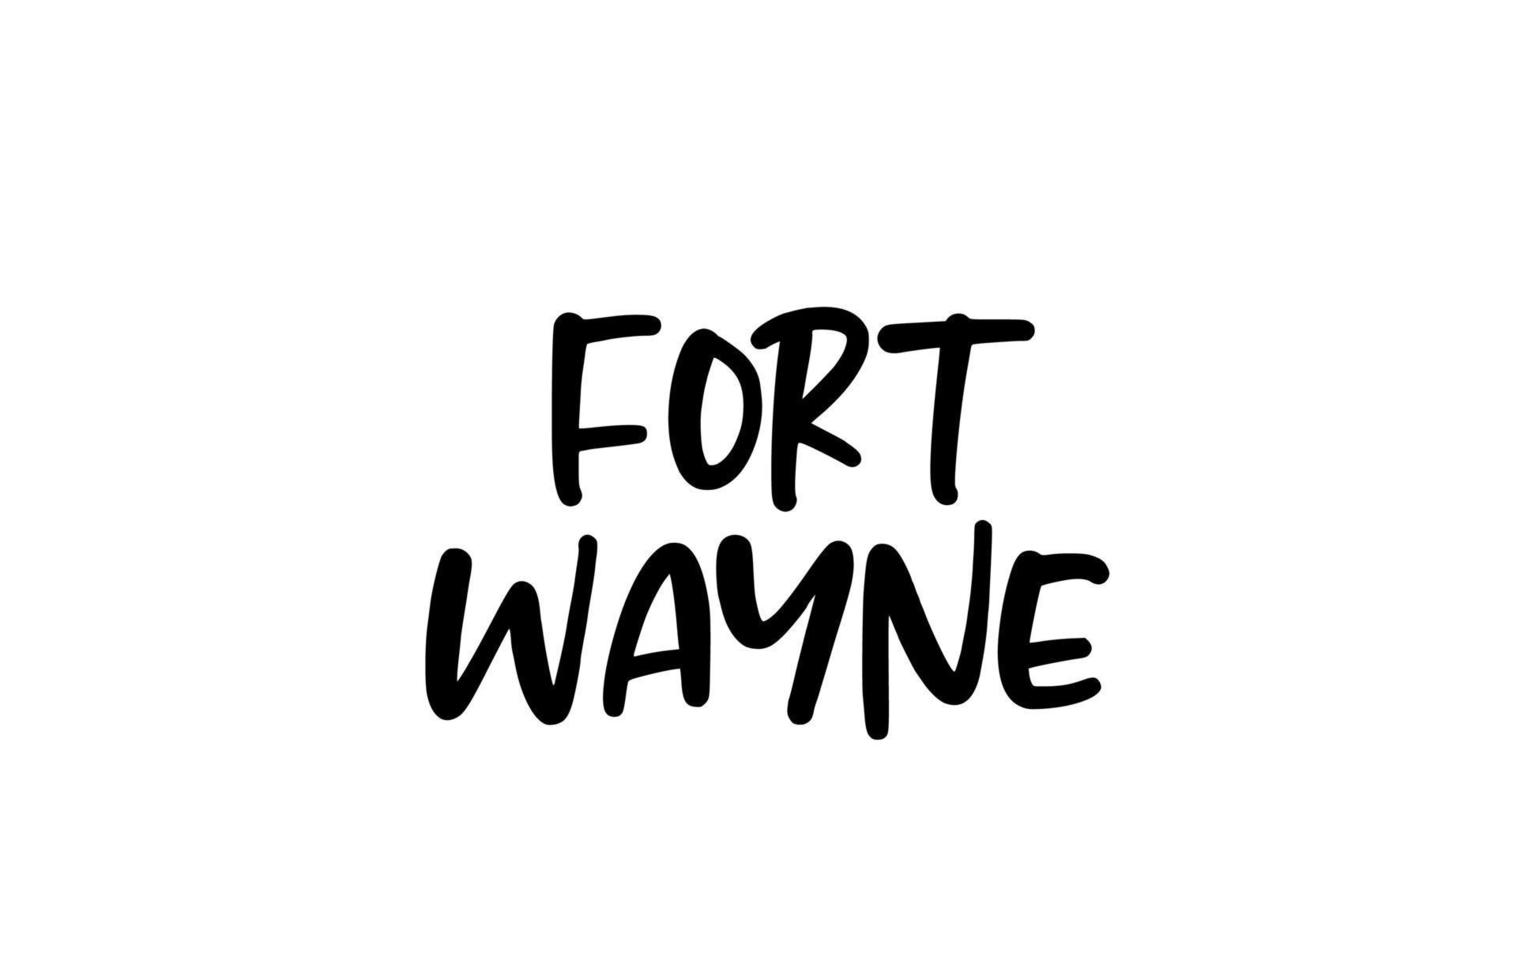 Fort Wayne City tipografia scritta a mano parola testo scritte a mano. testo di calligrafia moderna. colore nero vettore